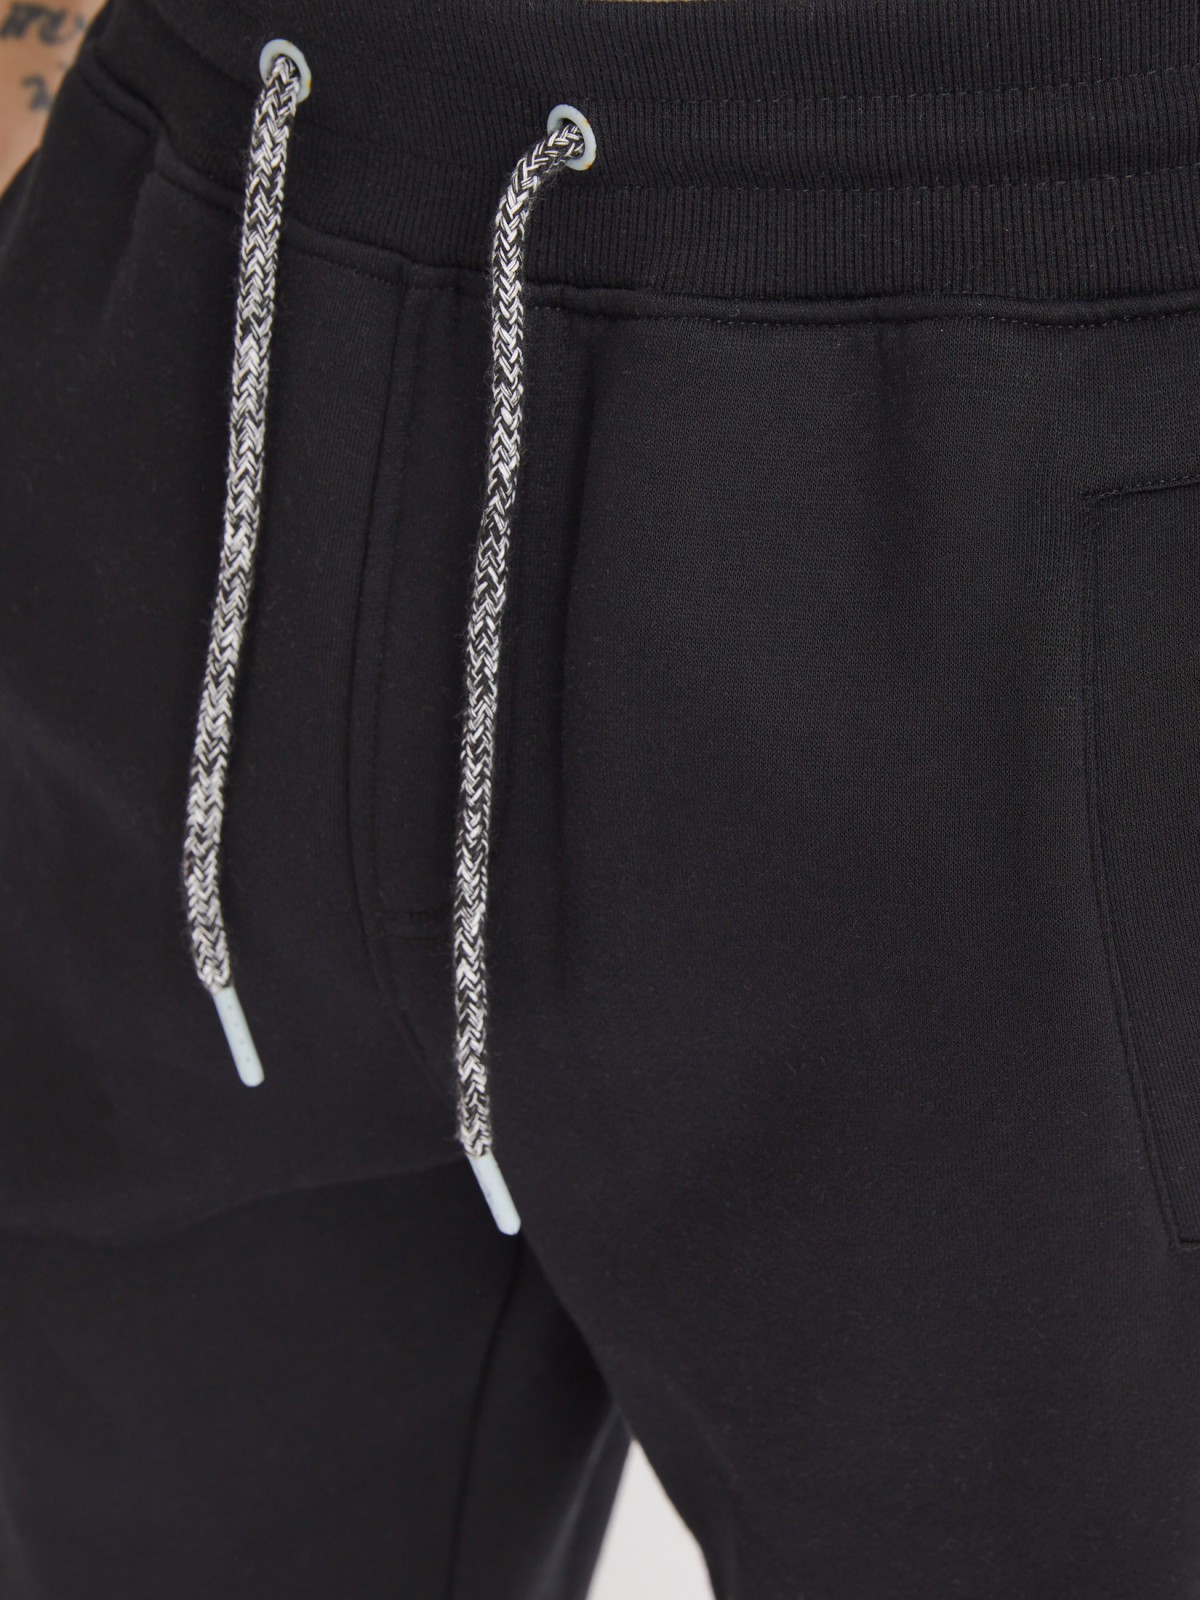 Утеплённые трикотажные брюки-джоггеры в спортивном стиле zolla 213337675022, цвет черный, размер M - фото 4